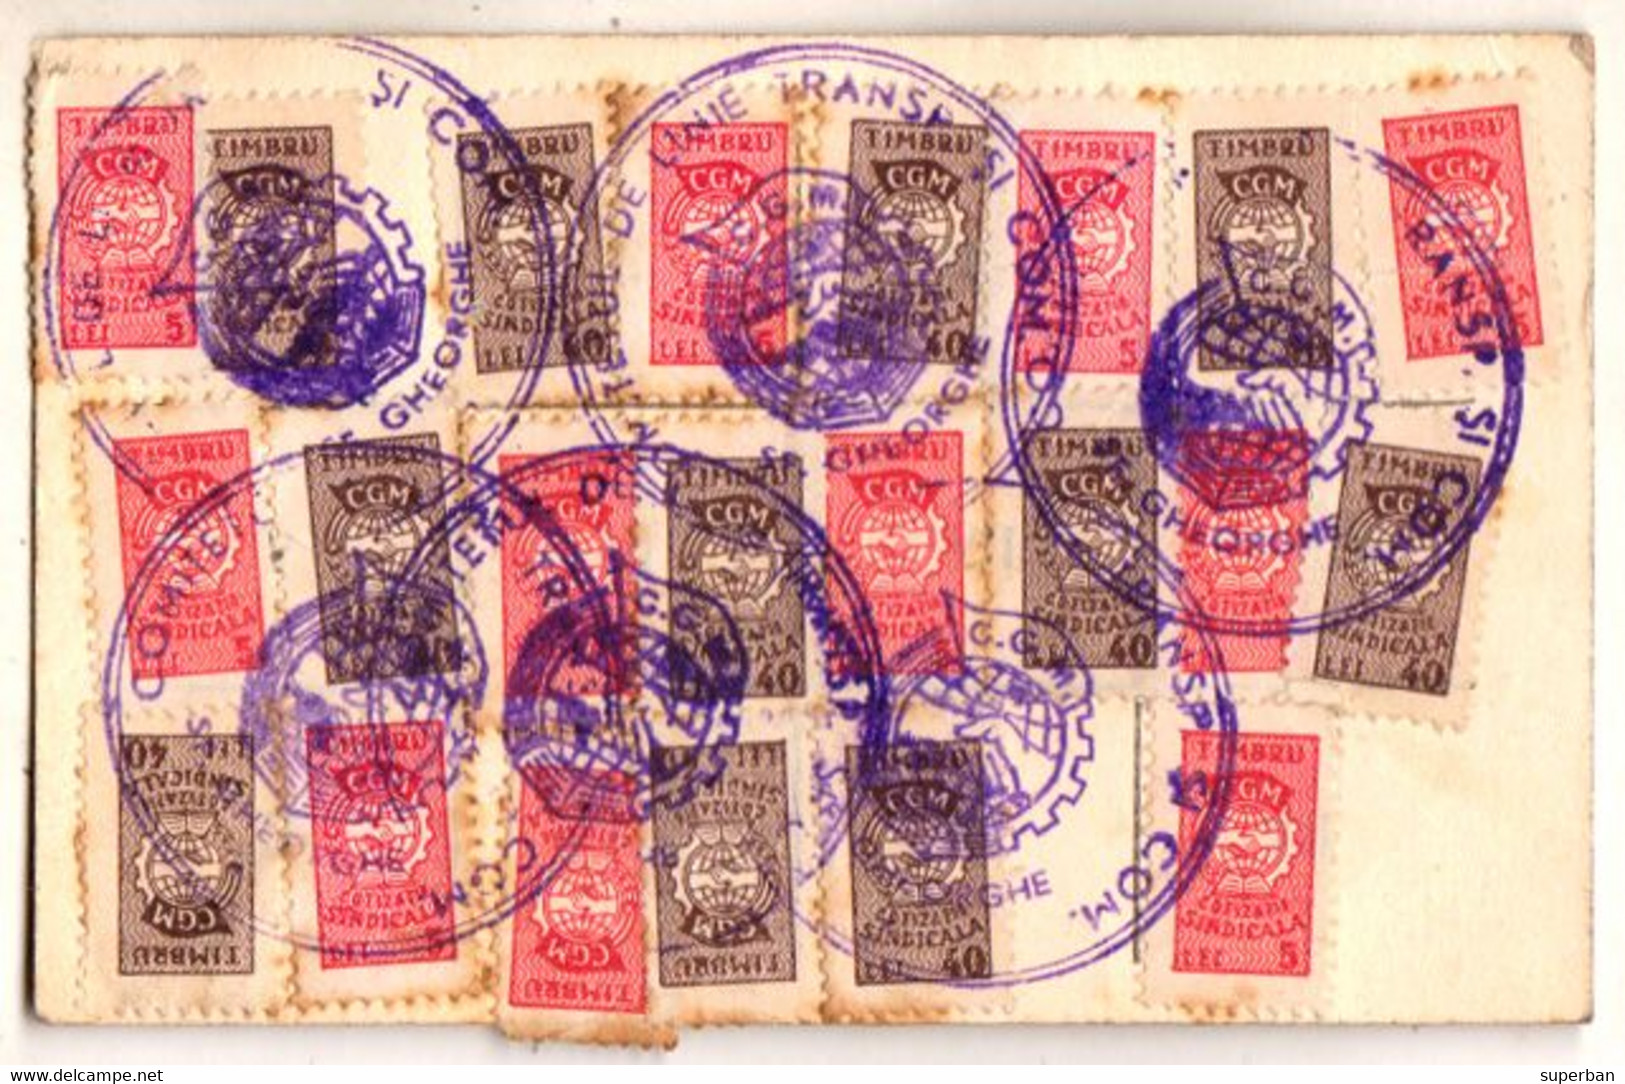 UNIUNEA SINDICATELOR Din ÎNVATAMÂNT / CIUC - TICHET DE COTIZARE / ANUL 1950 - 22 TIMBRE C.G.M. - CINDERELLA (ak797) - Revenue Stamps